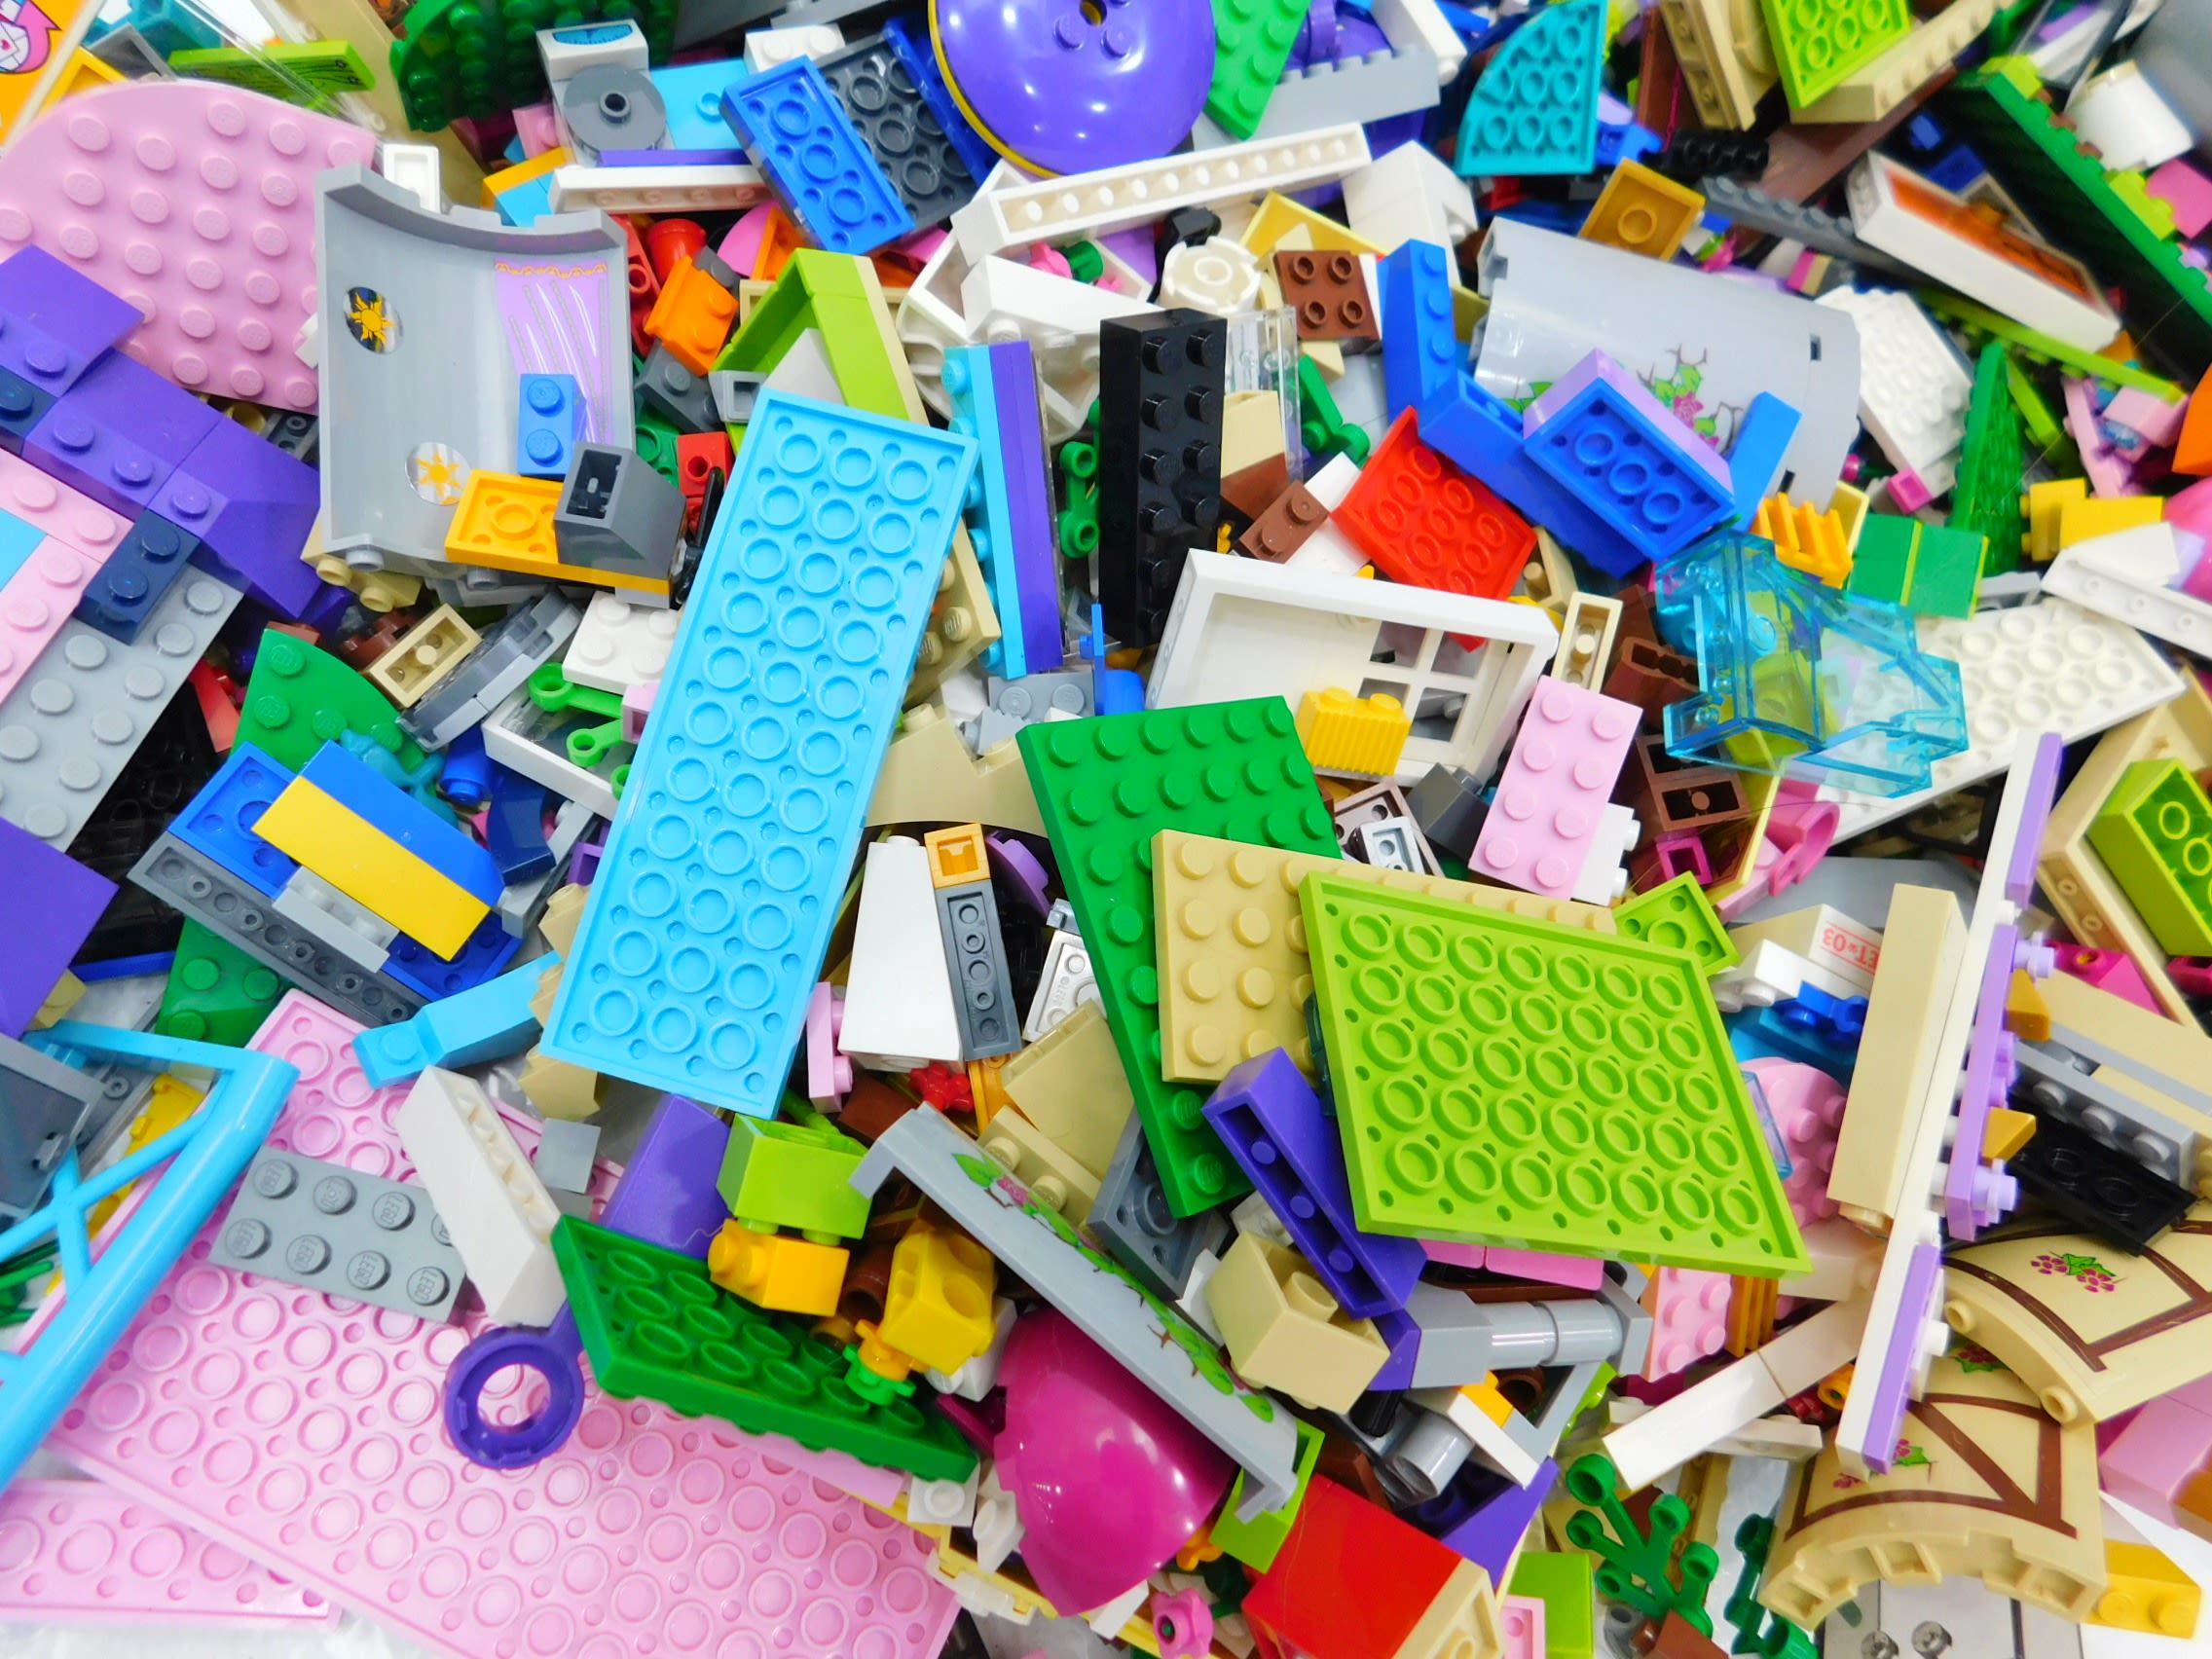 Buy the 1.4 LBS LEGO Friends Minifigures Bulk Box